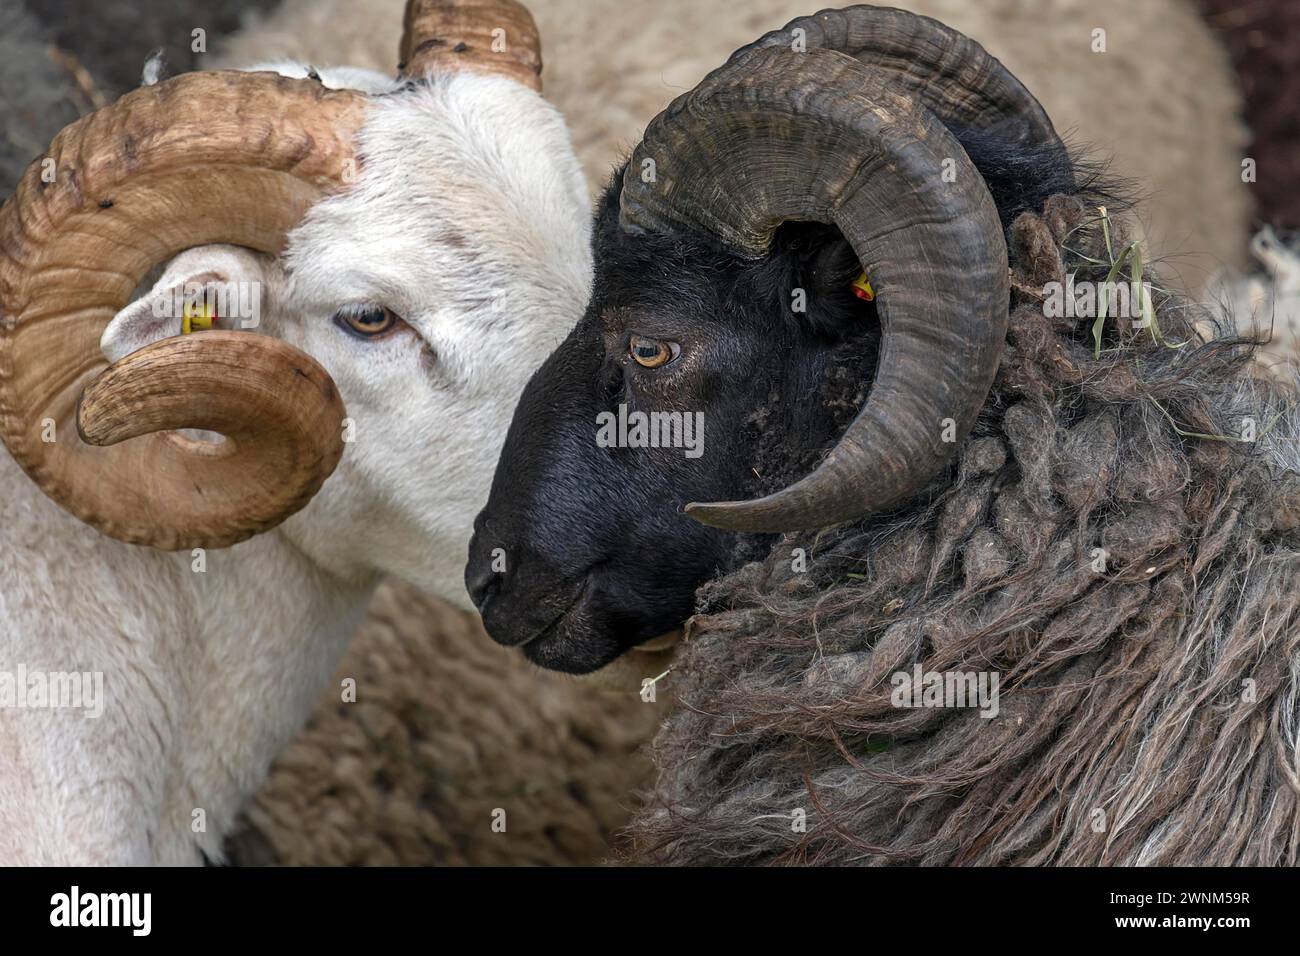 Moutons domestiques mâles à tête noire (Ovis aries), Rehna, Mecklembourg-Poméranie occidentale, Allemagne Banque D'Images